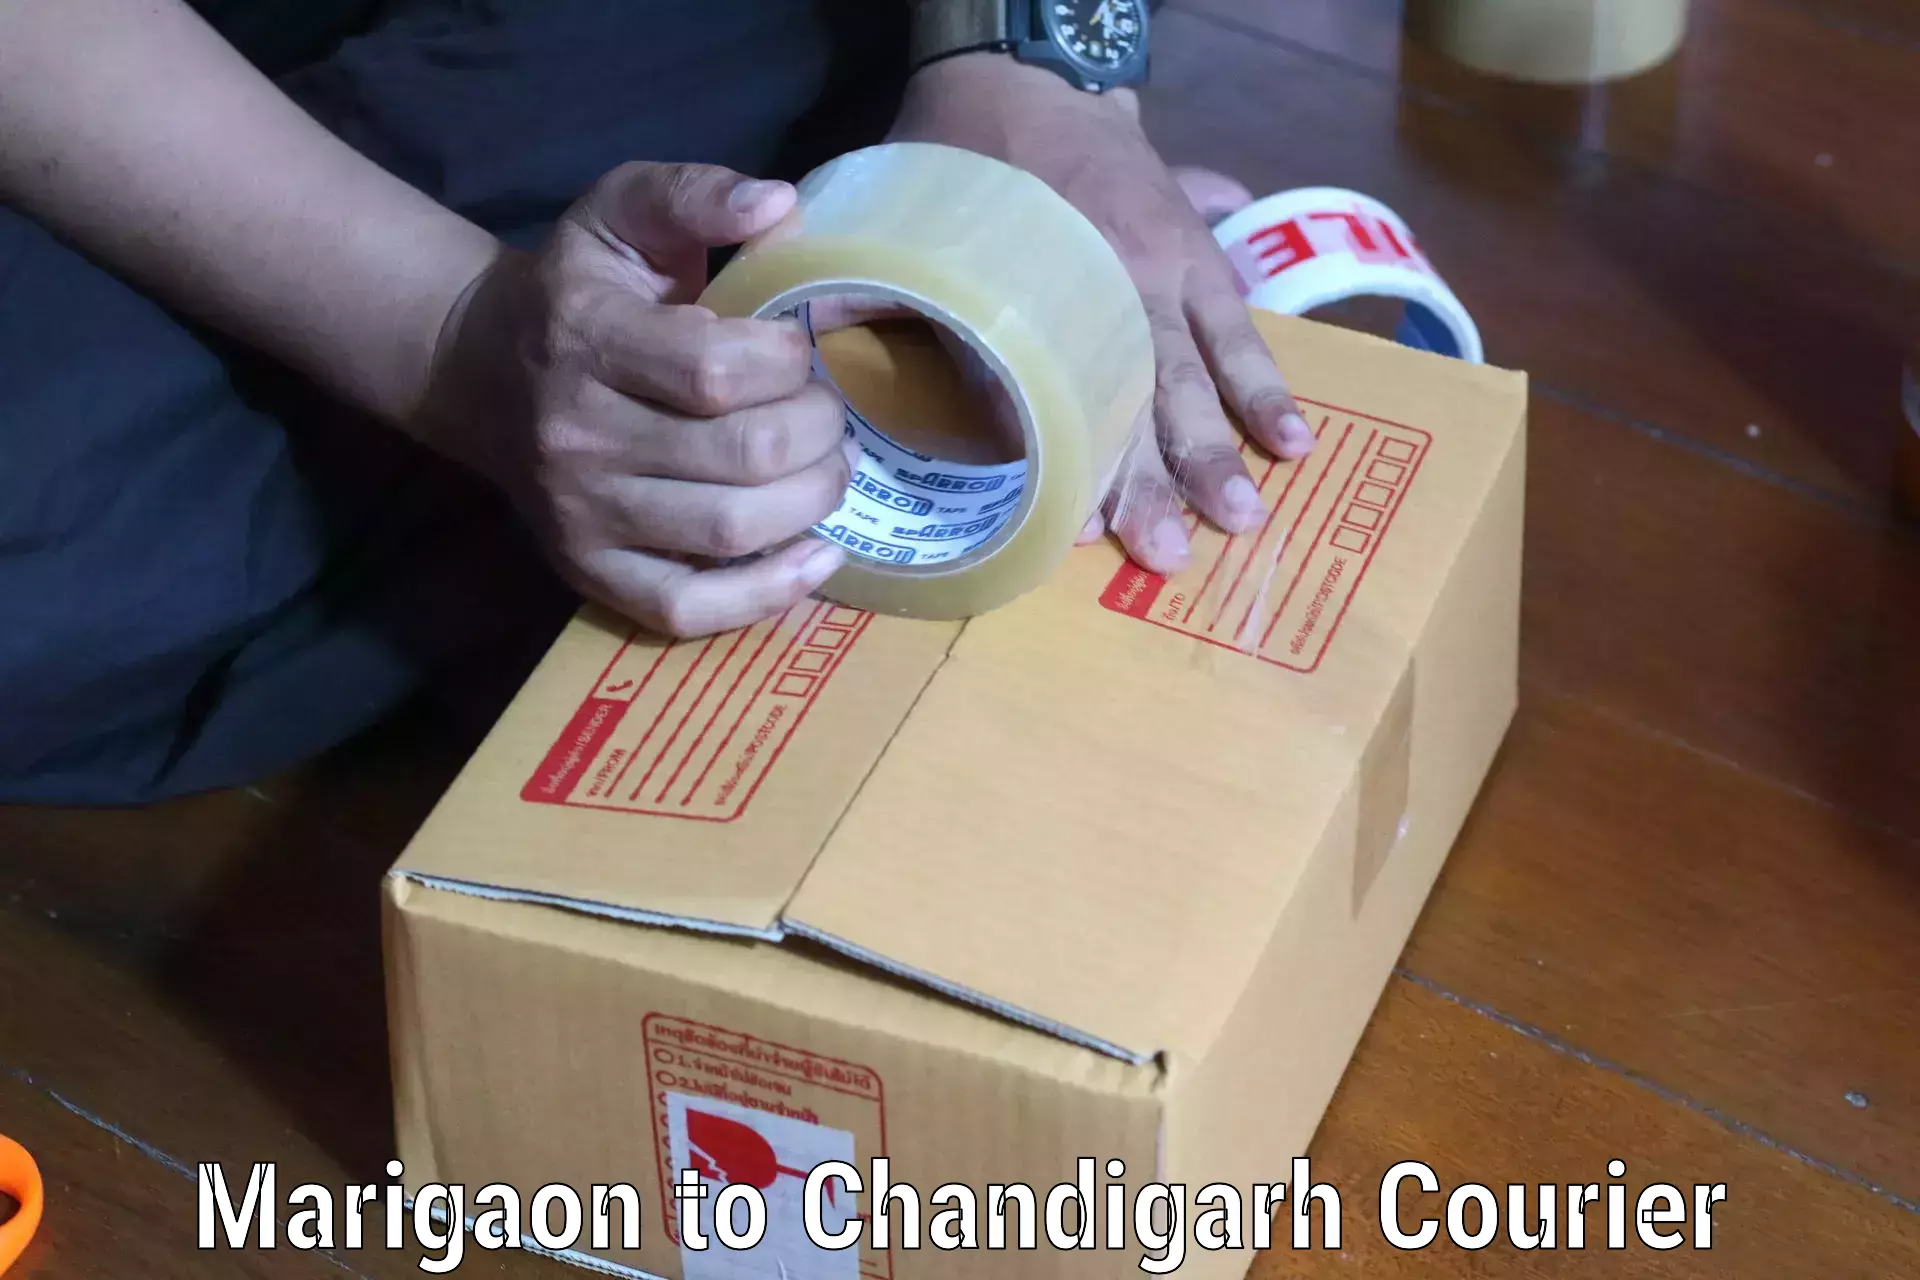 Digital courier platforms Marigaon to Chandigarh